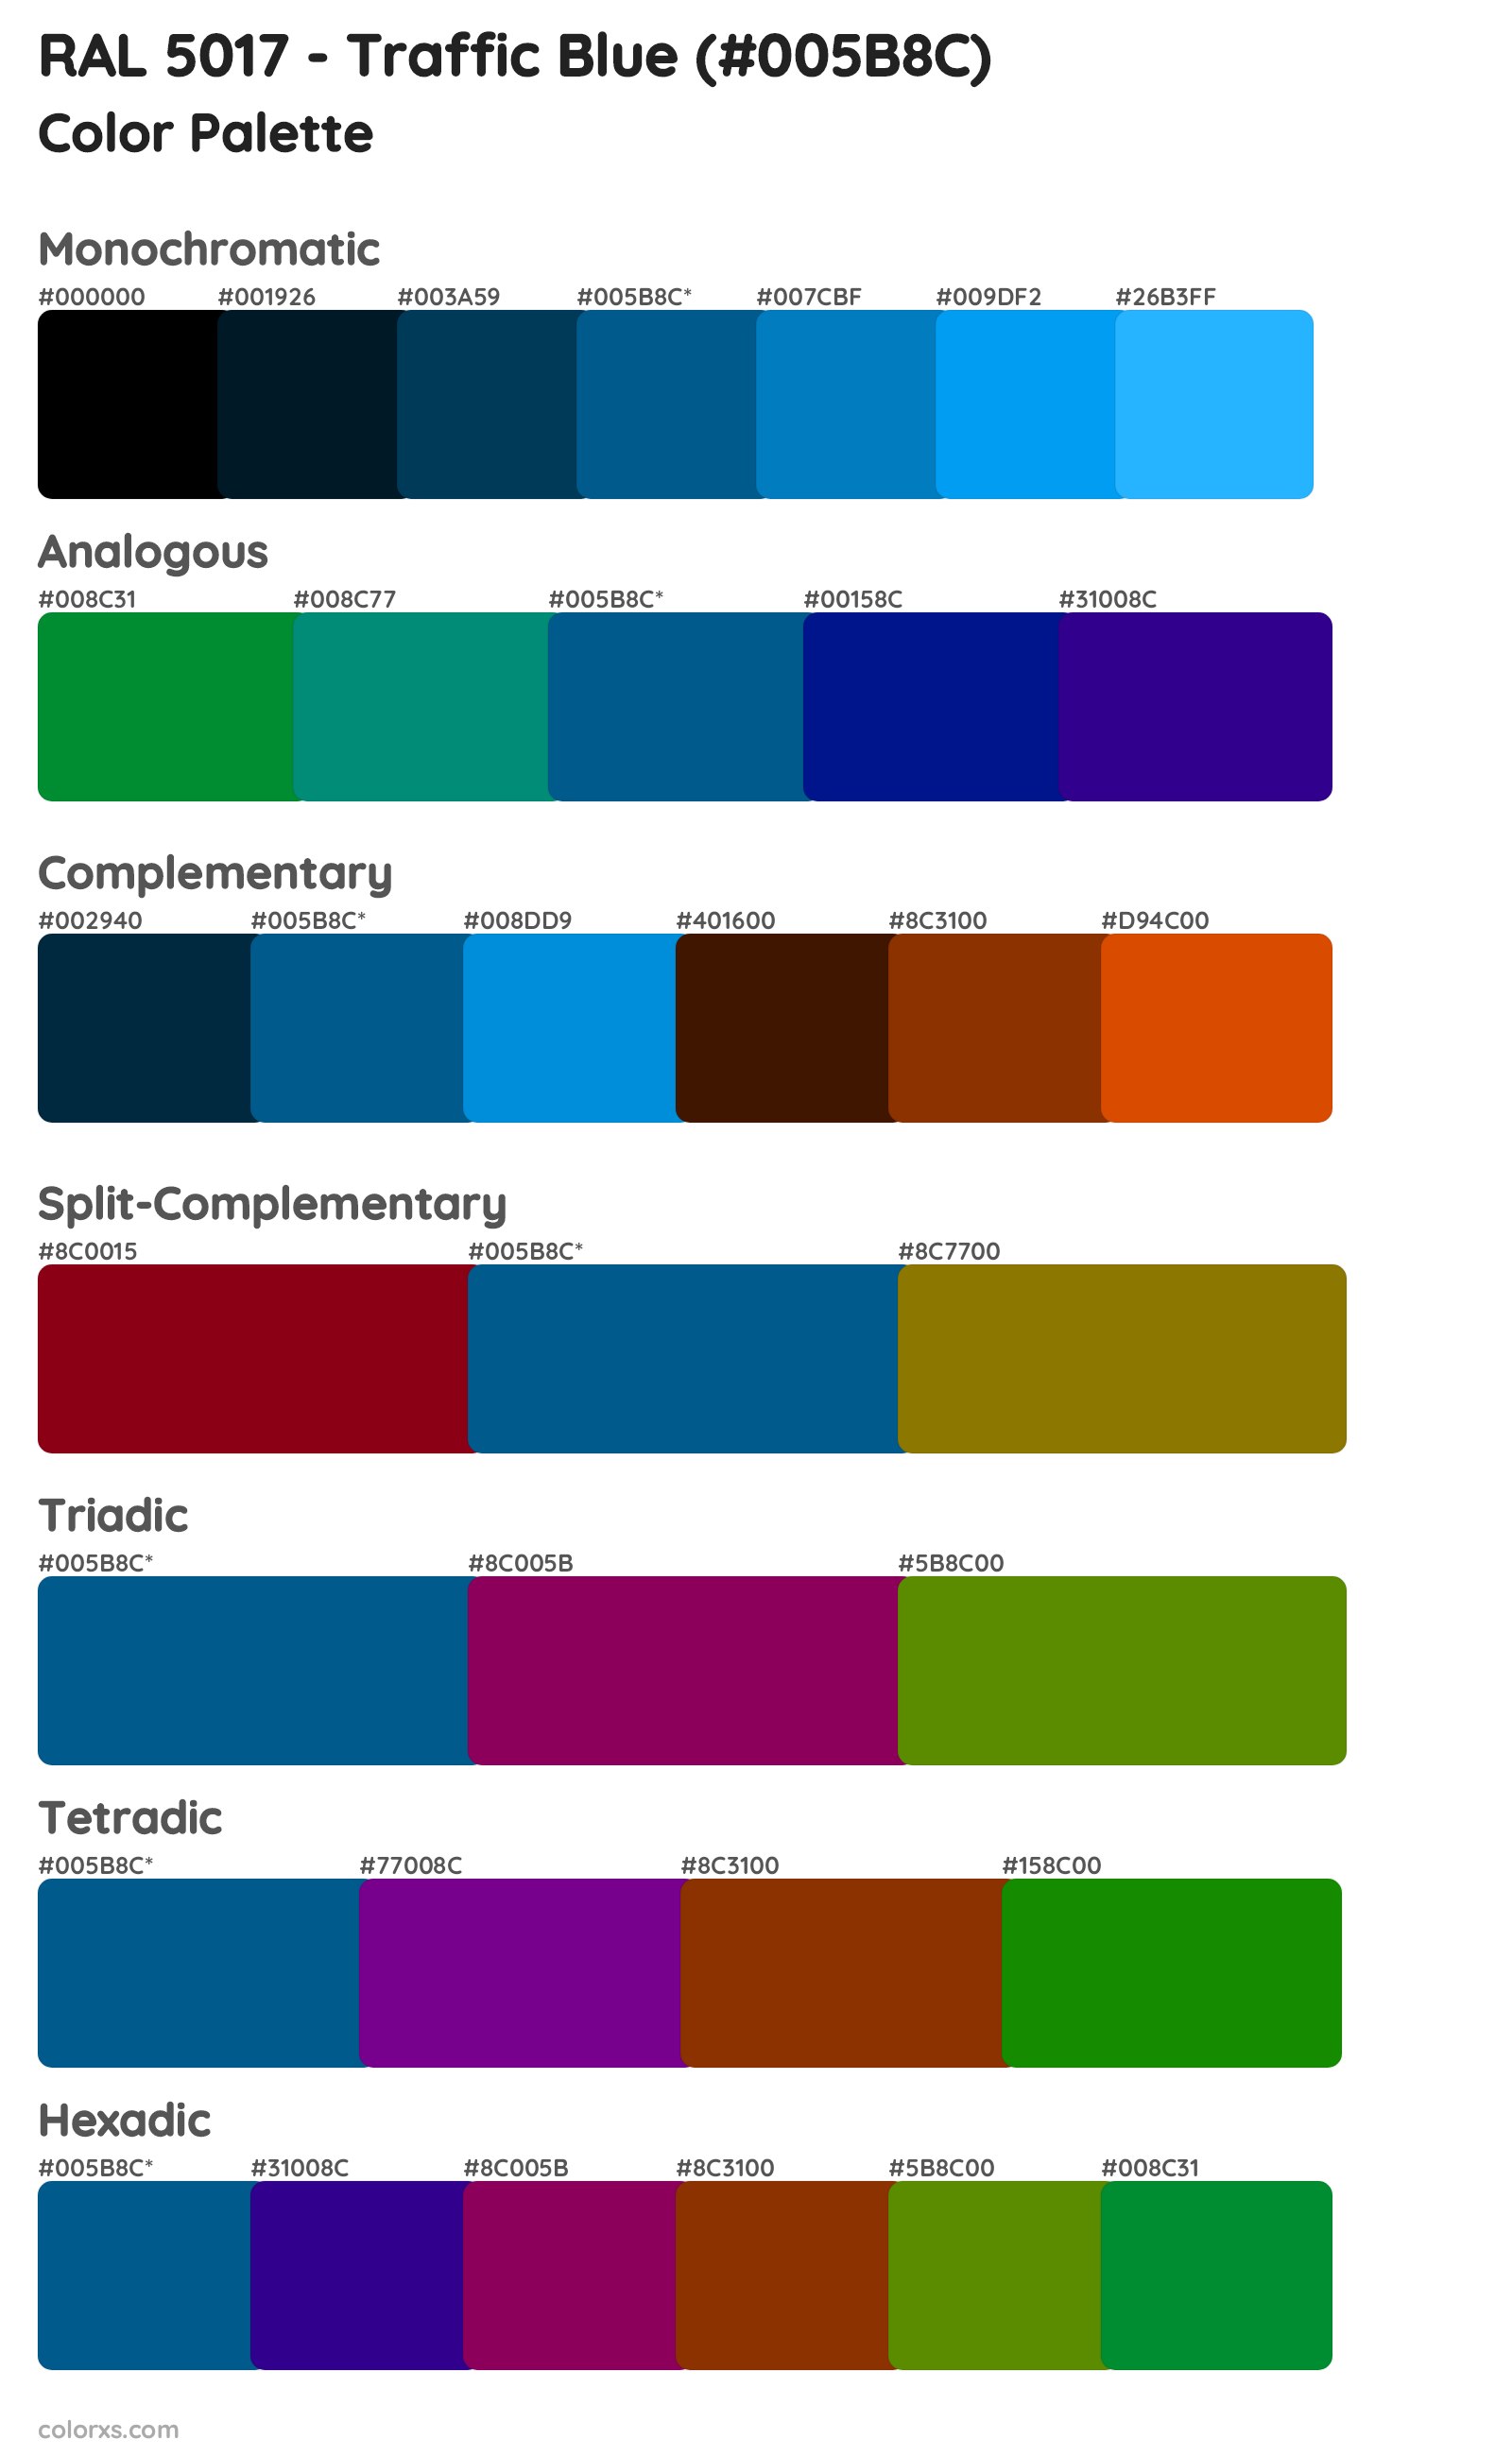 RAL 5017 - Traffic Blue Color Scheme Palettes